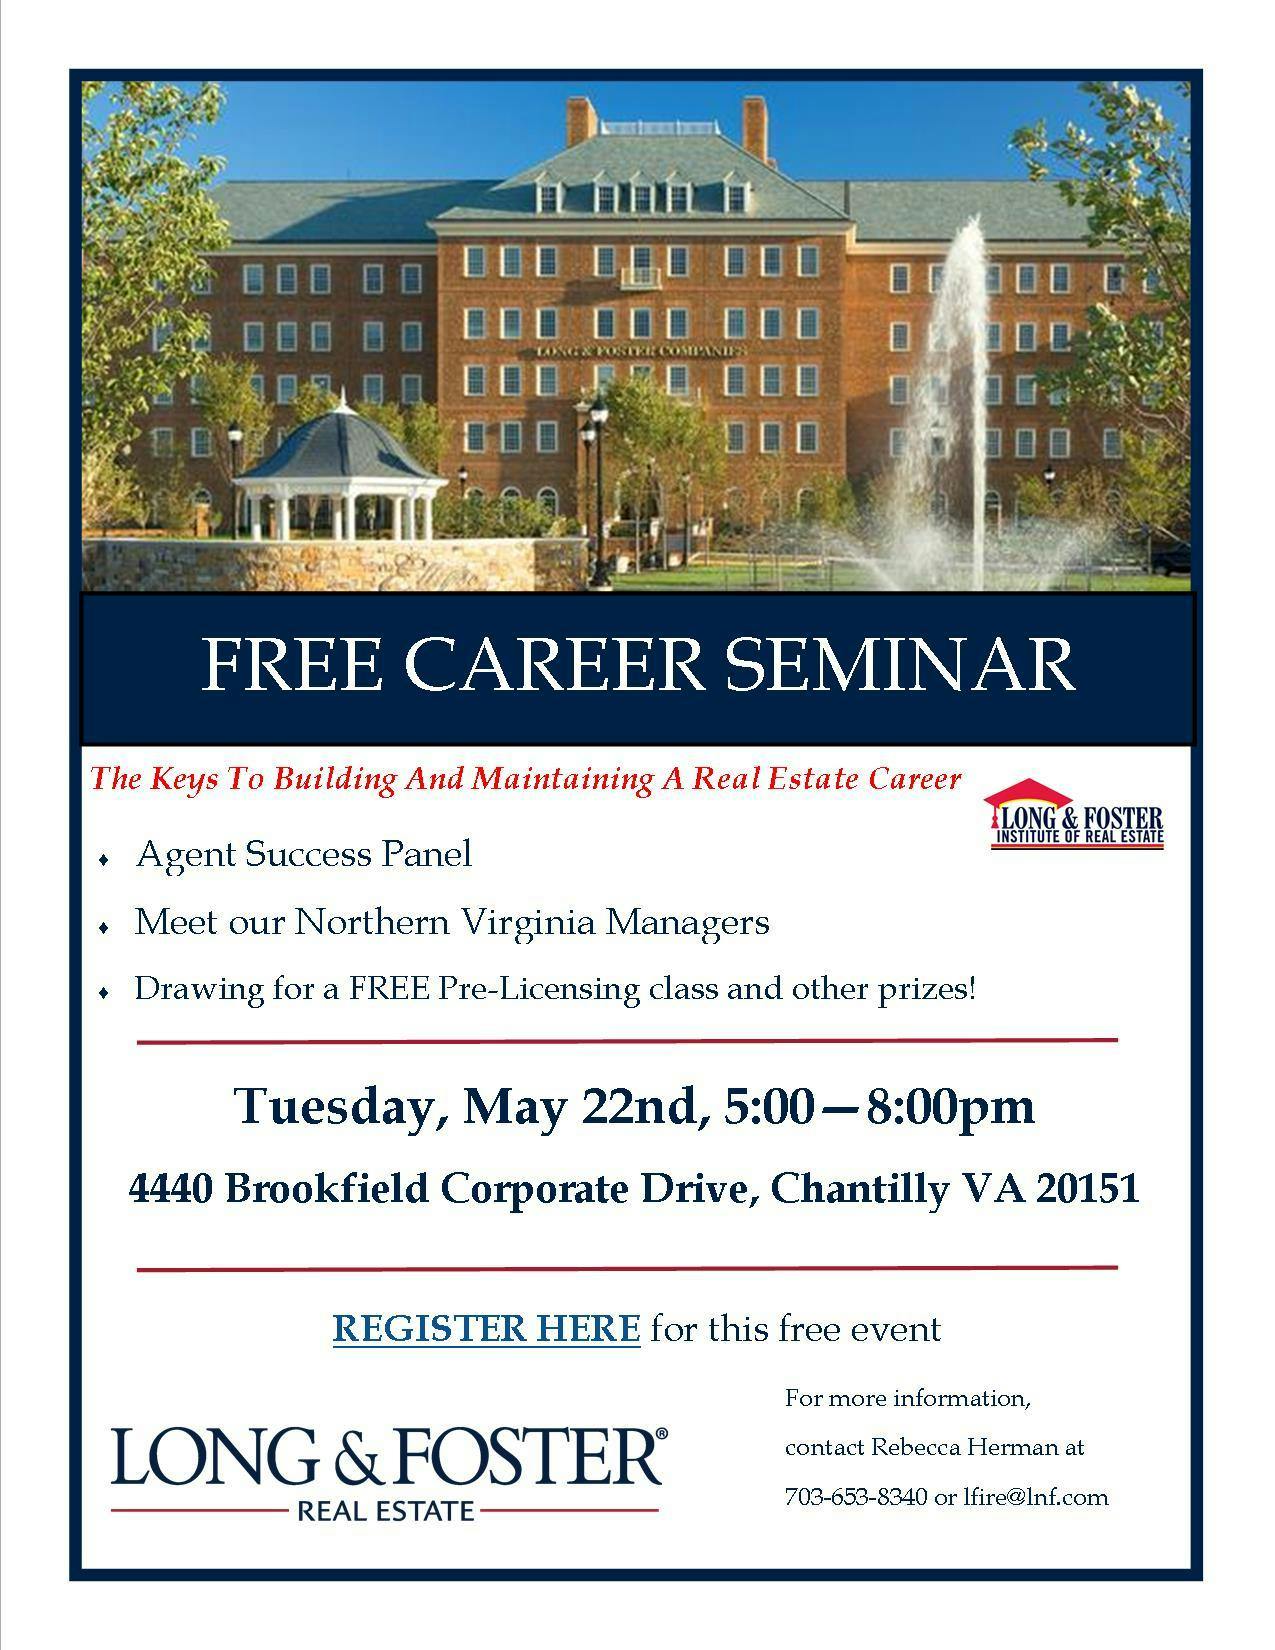 FREE Northern Virginia Real Estate Career Seminar